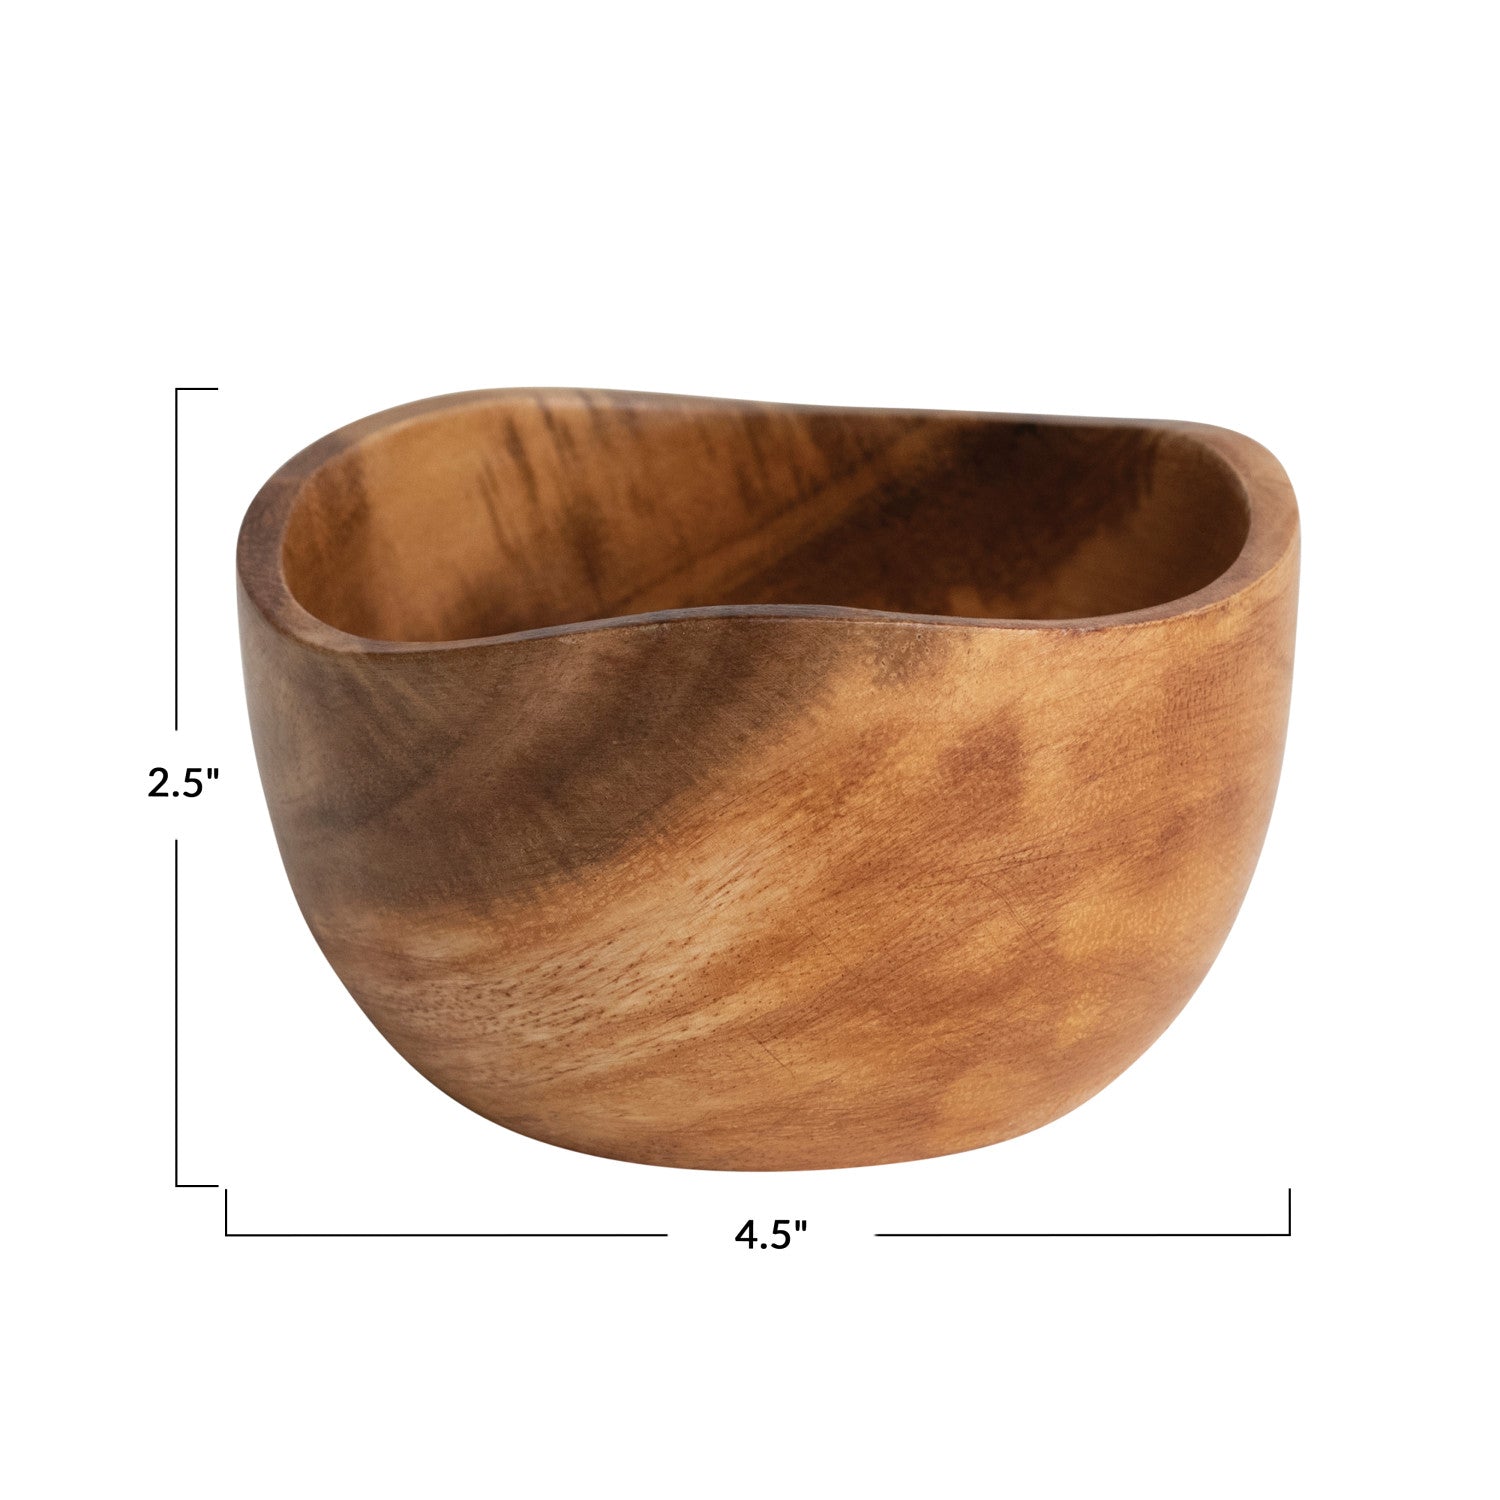 4.5" x 2.5" acacia wood bowl.